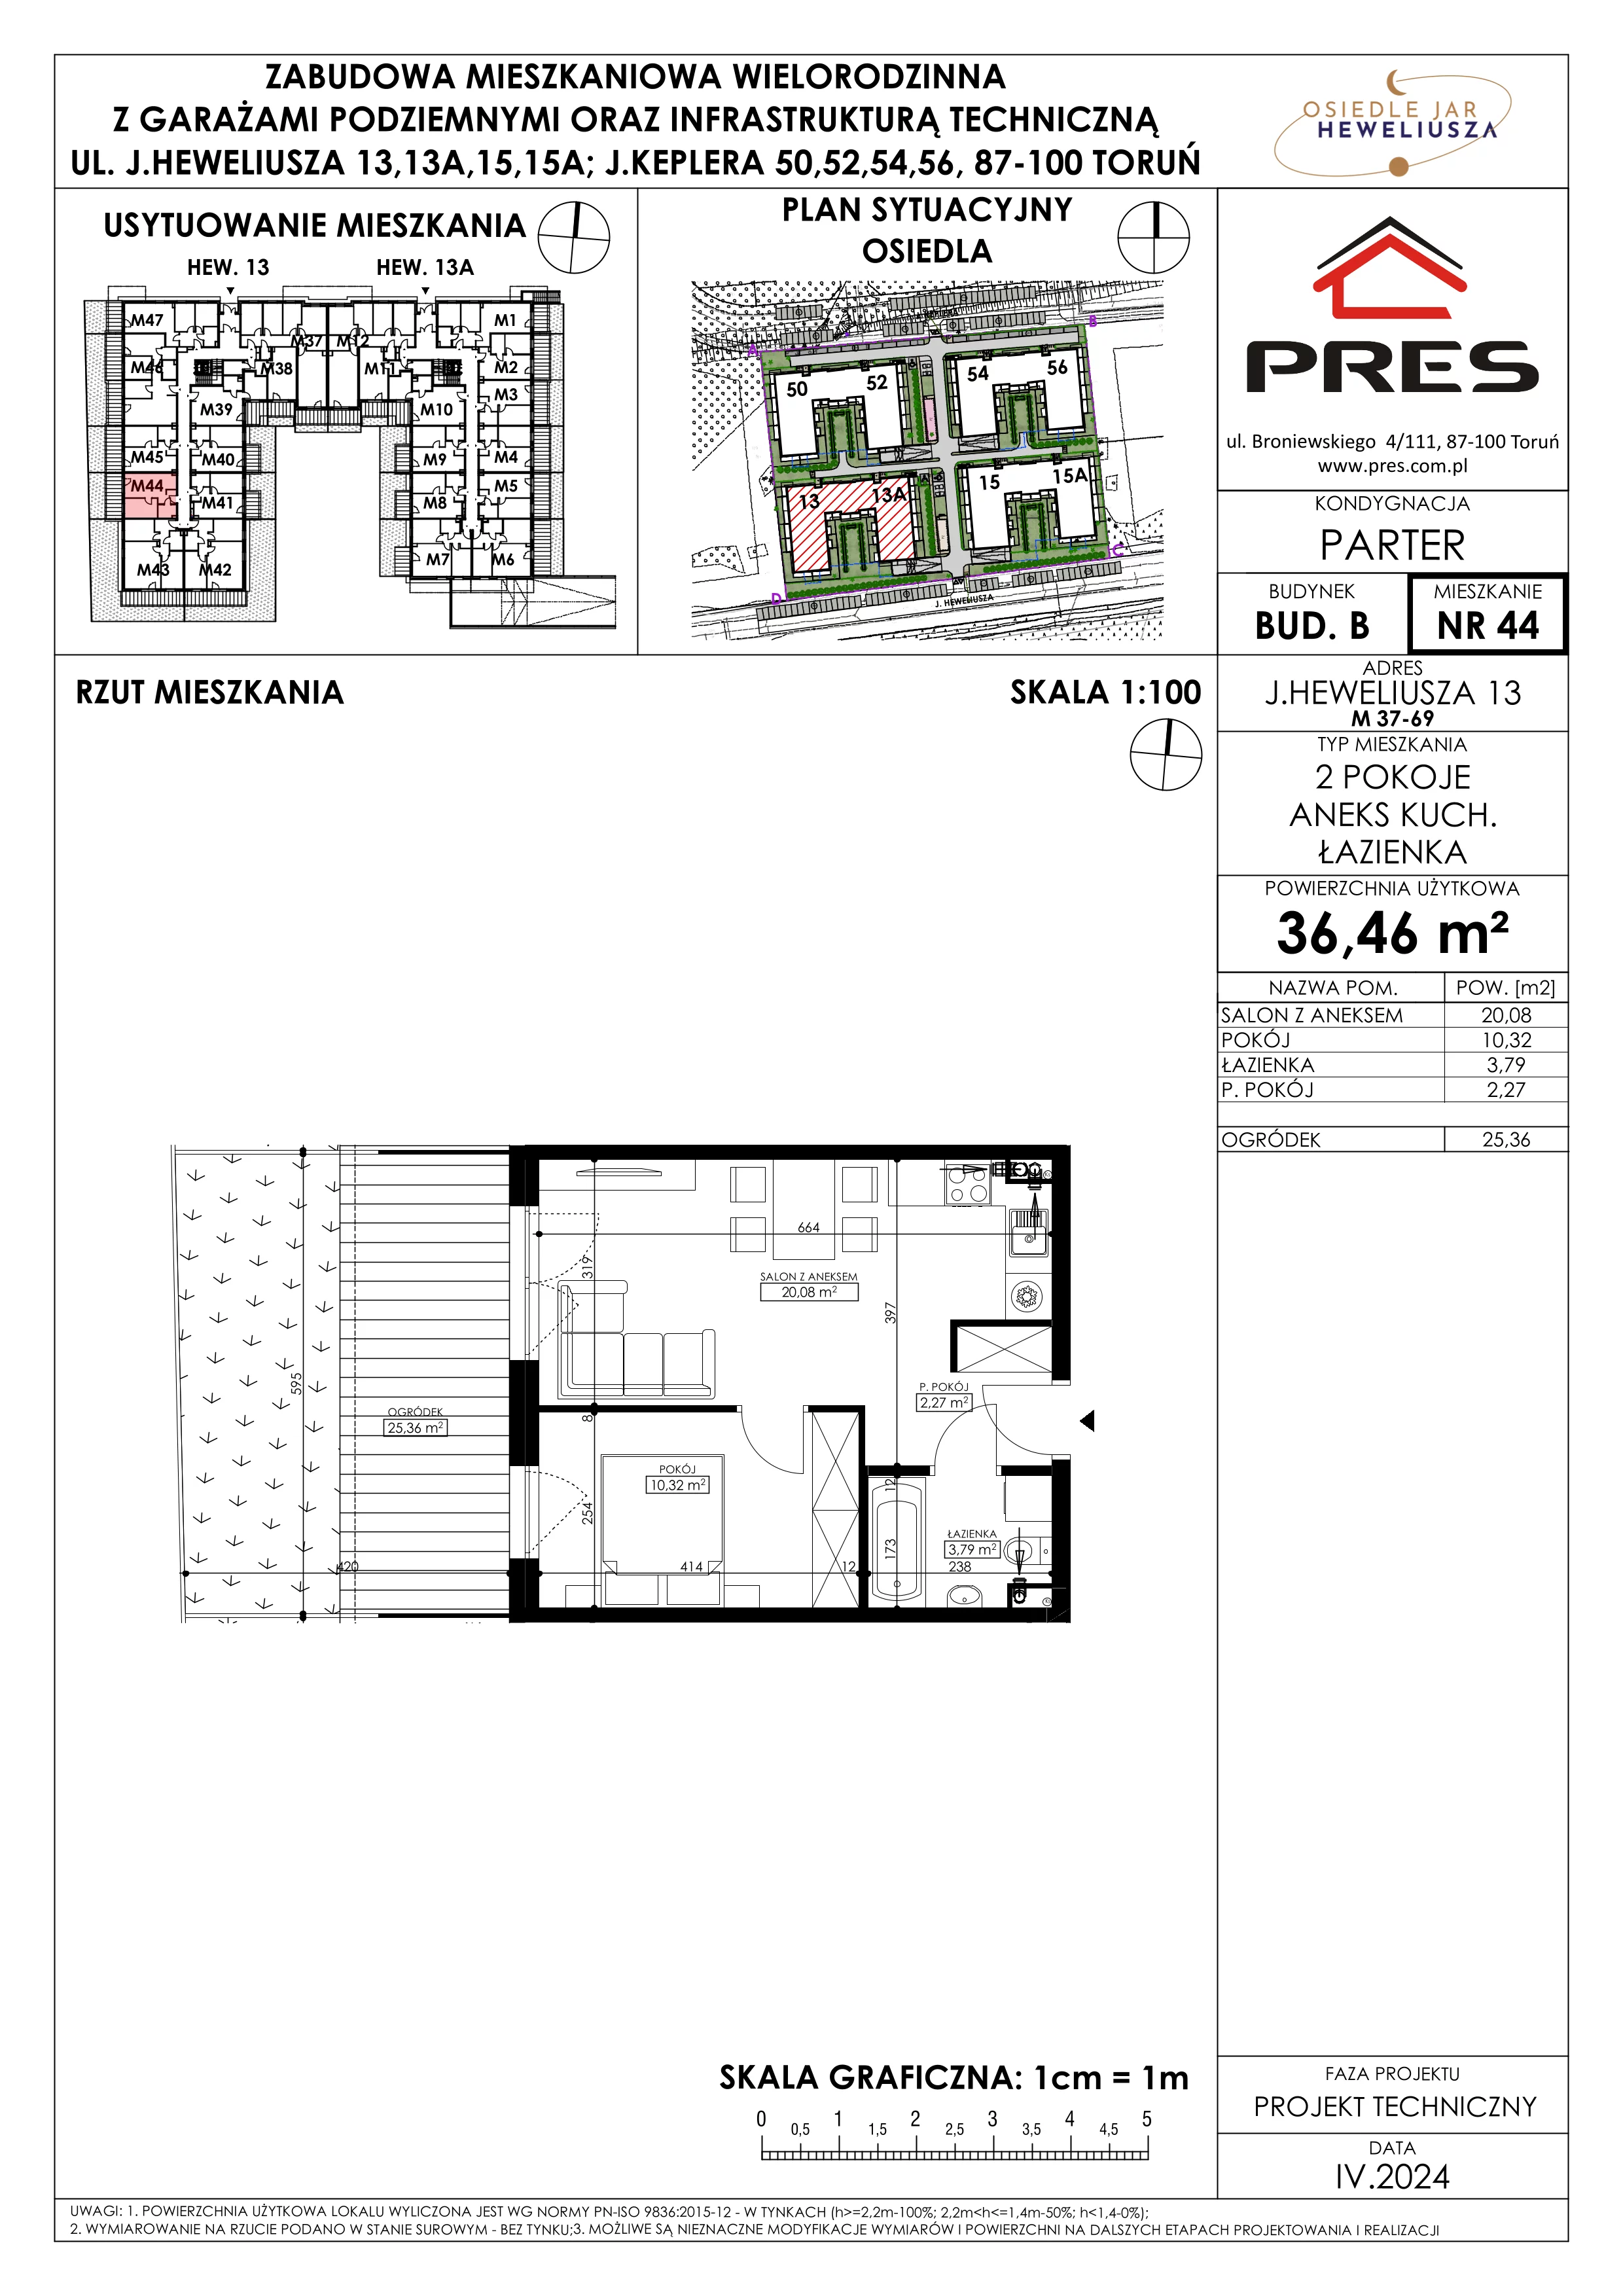 Mieszkanie 36,46 m², parter, oferta nr 44, Osiedle JAR Heweliusza - Etap II, Toruń, Wrzosy, JAR, ul. Heweliusza 13-15A